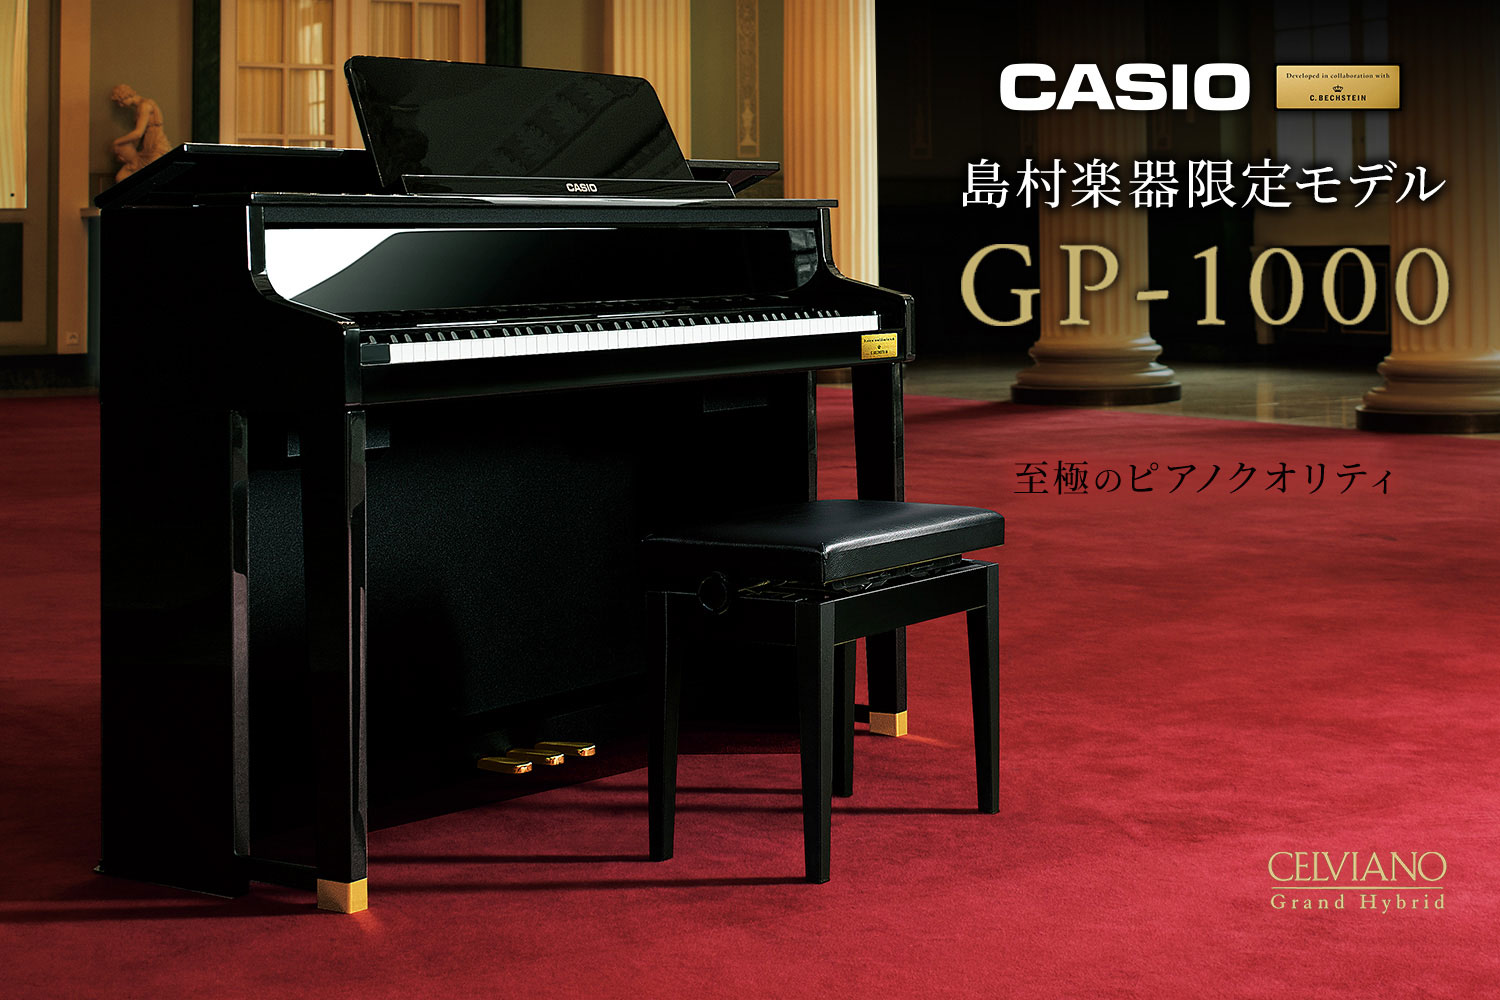 【新入荷！】CASIO×C.ベヒシュタイン コラボレーション電子ピアノに島村楽器限定モデル「GP-1000」が新登場！（9/10更新）